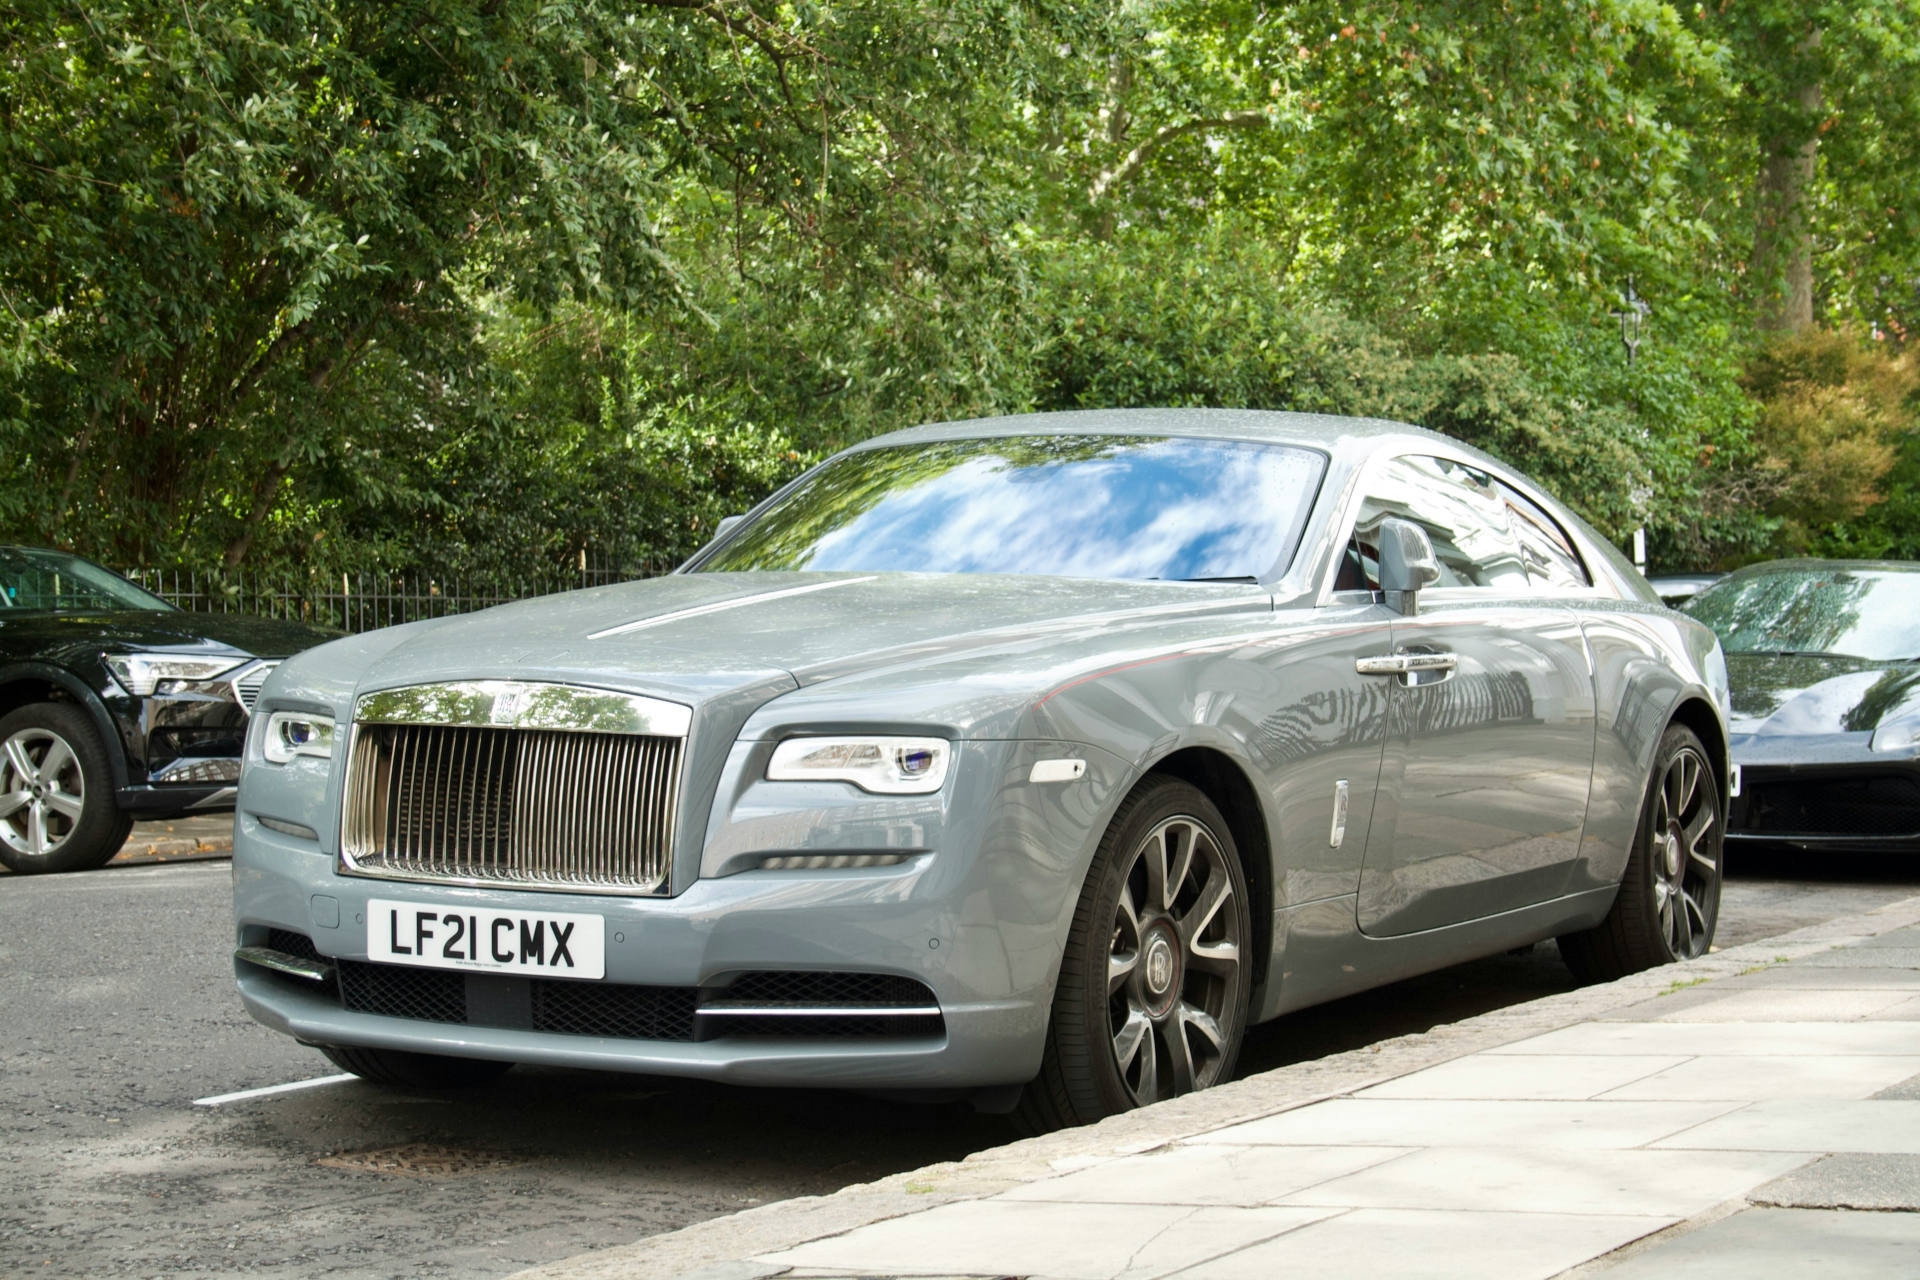 Rolls Royce UK